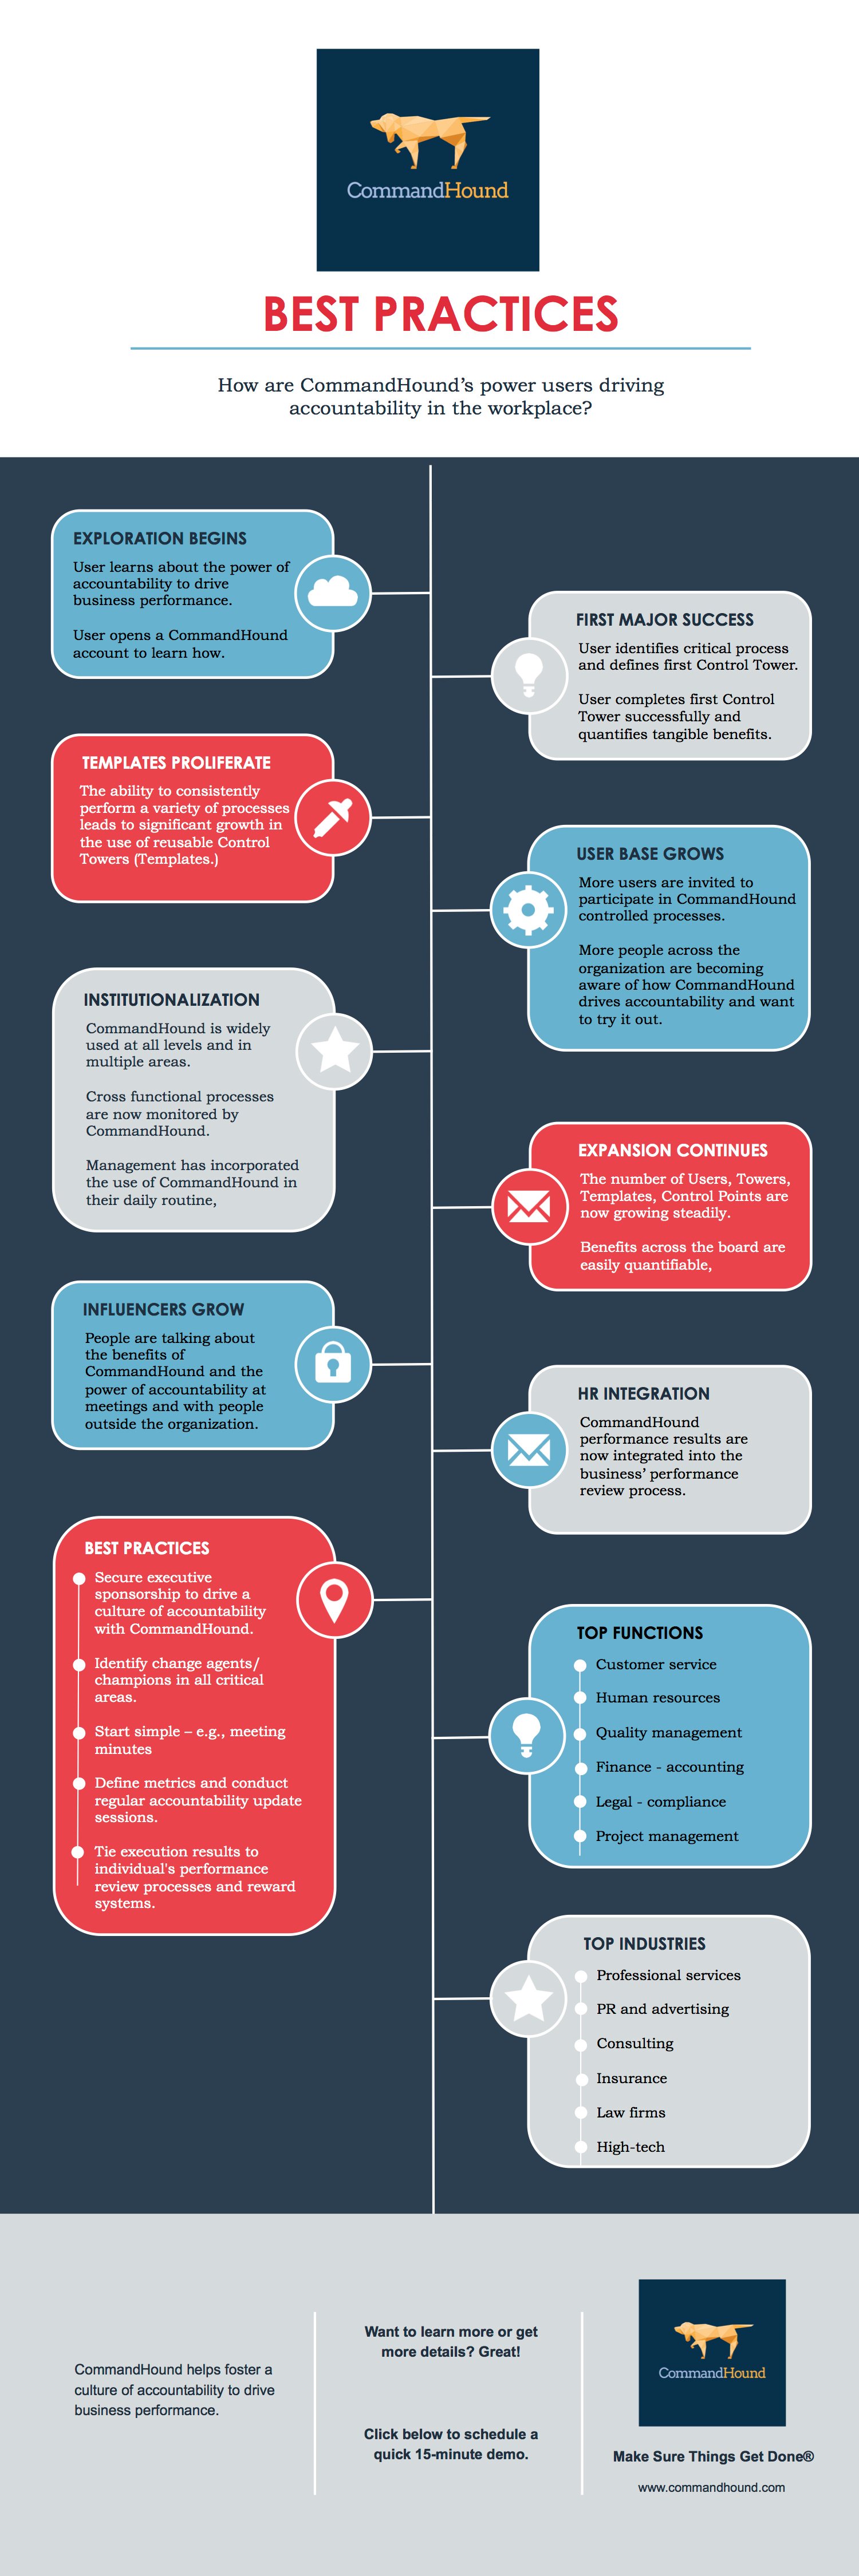 CommandHound Best Practices Infographic